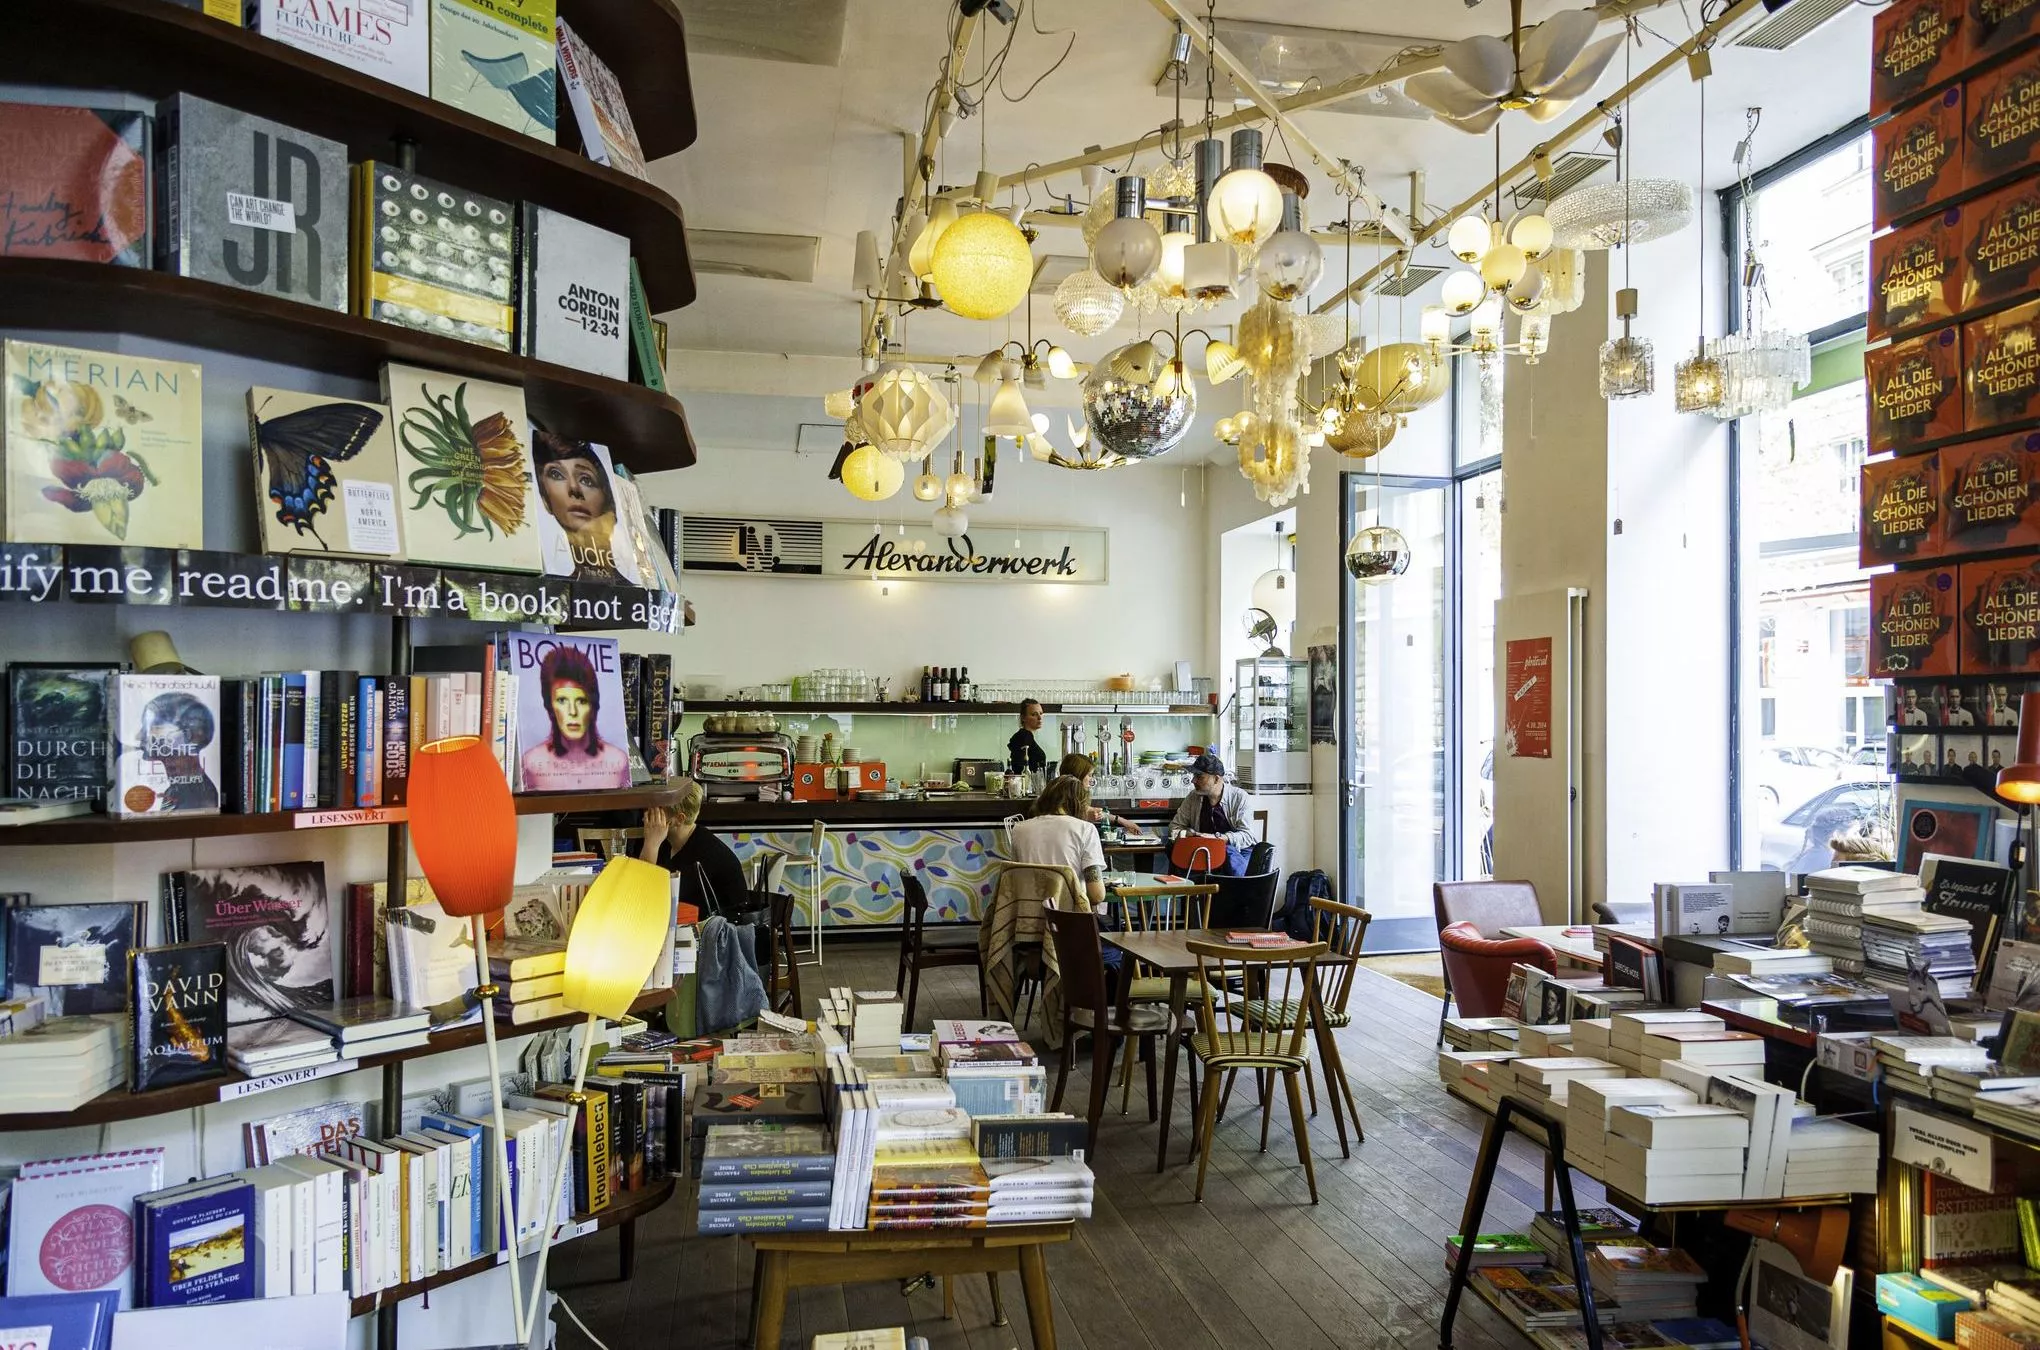 Café, Bar, Buchhandlung – das "Phil" in der Gumpendorfer Straße ist alles drei zugleich. Einen Teil der Möbel kann man sogar kaufen